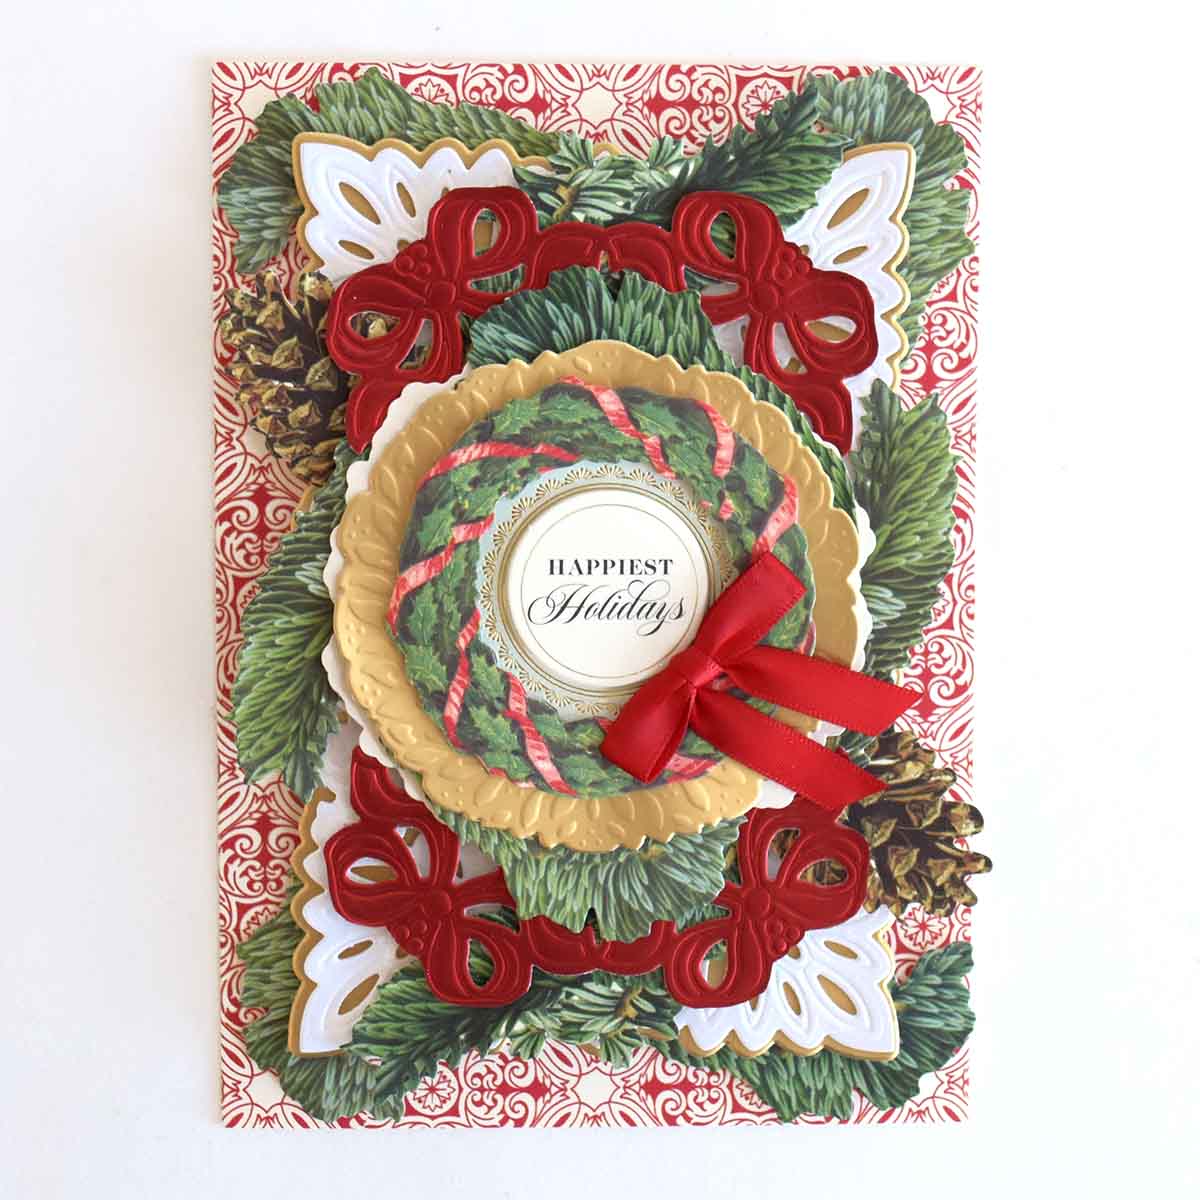 a handmade christmas card with a wreath.